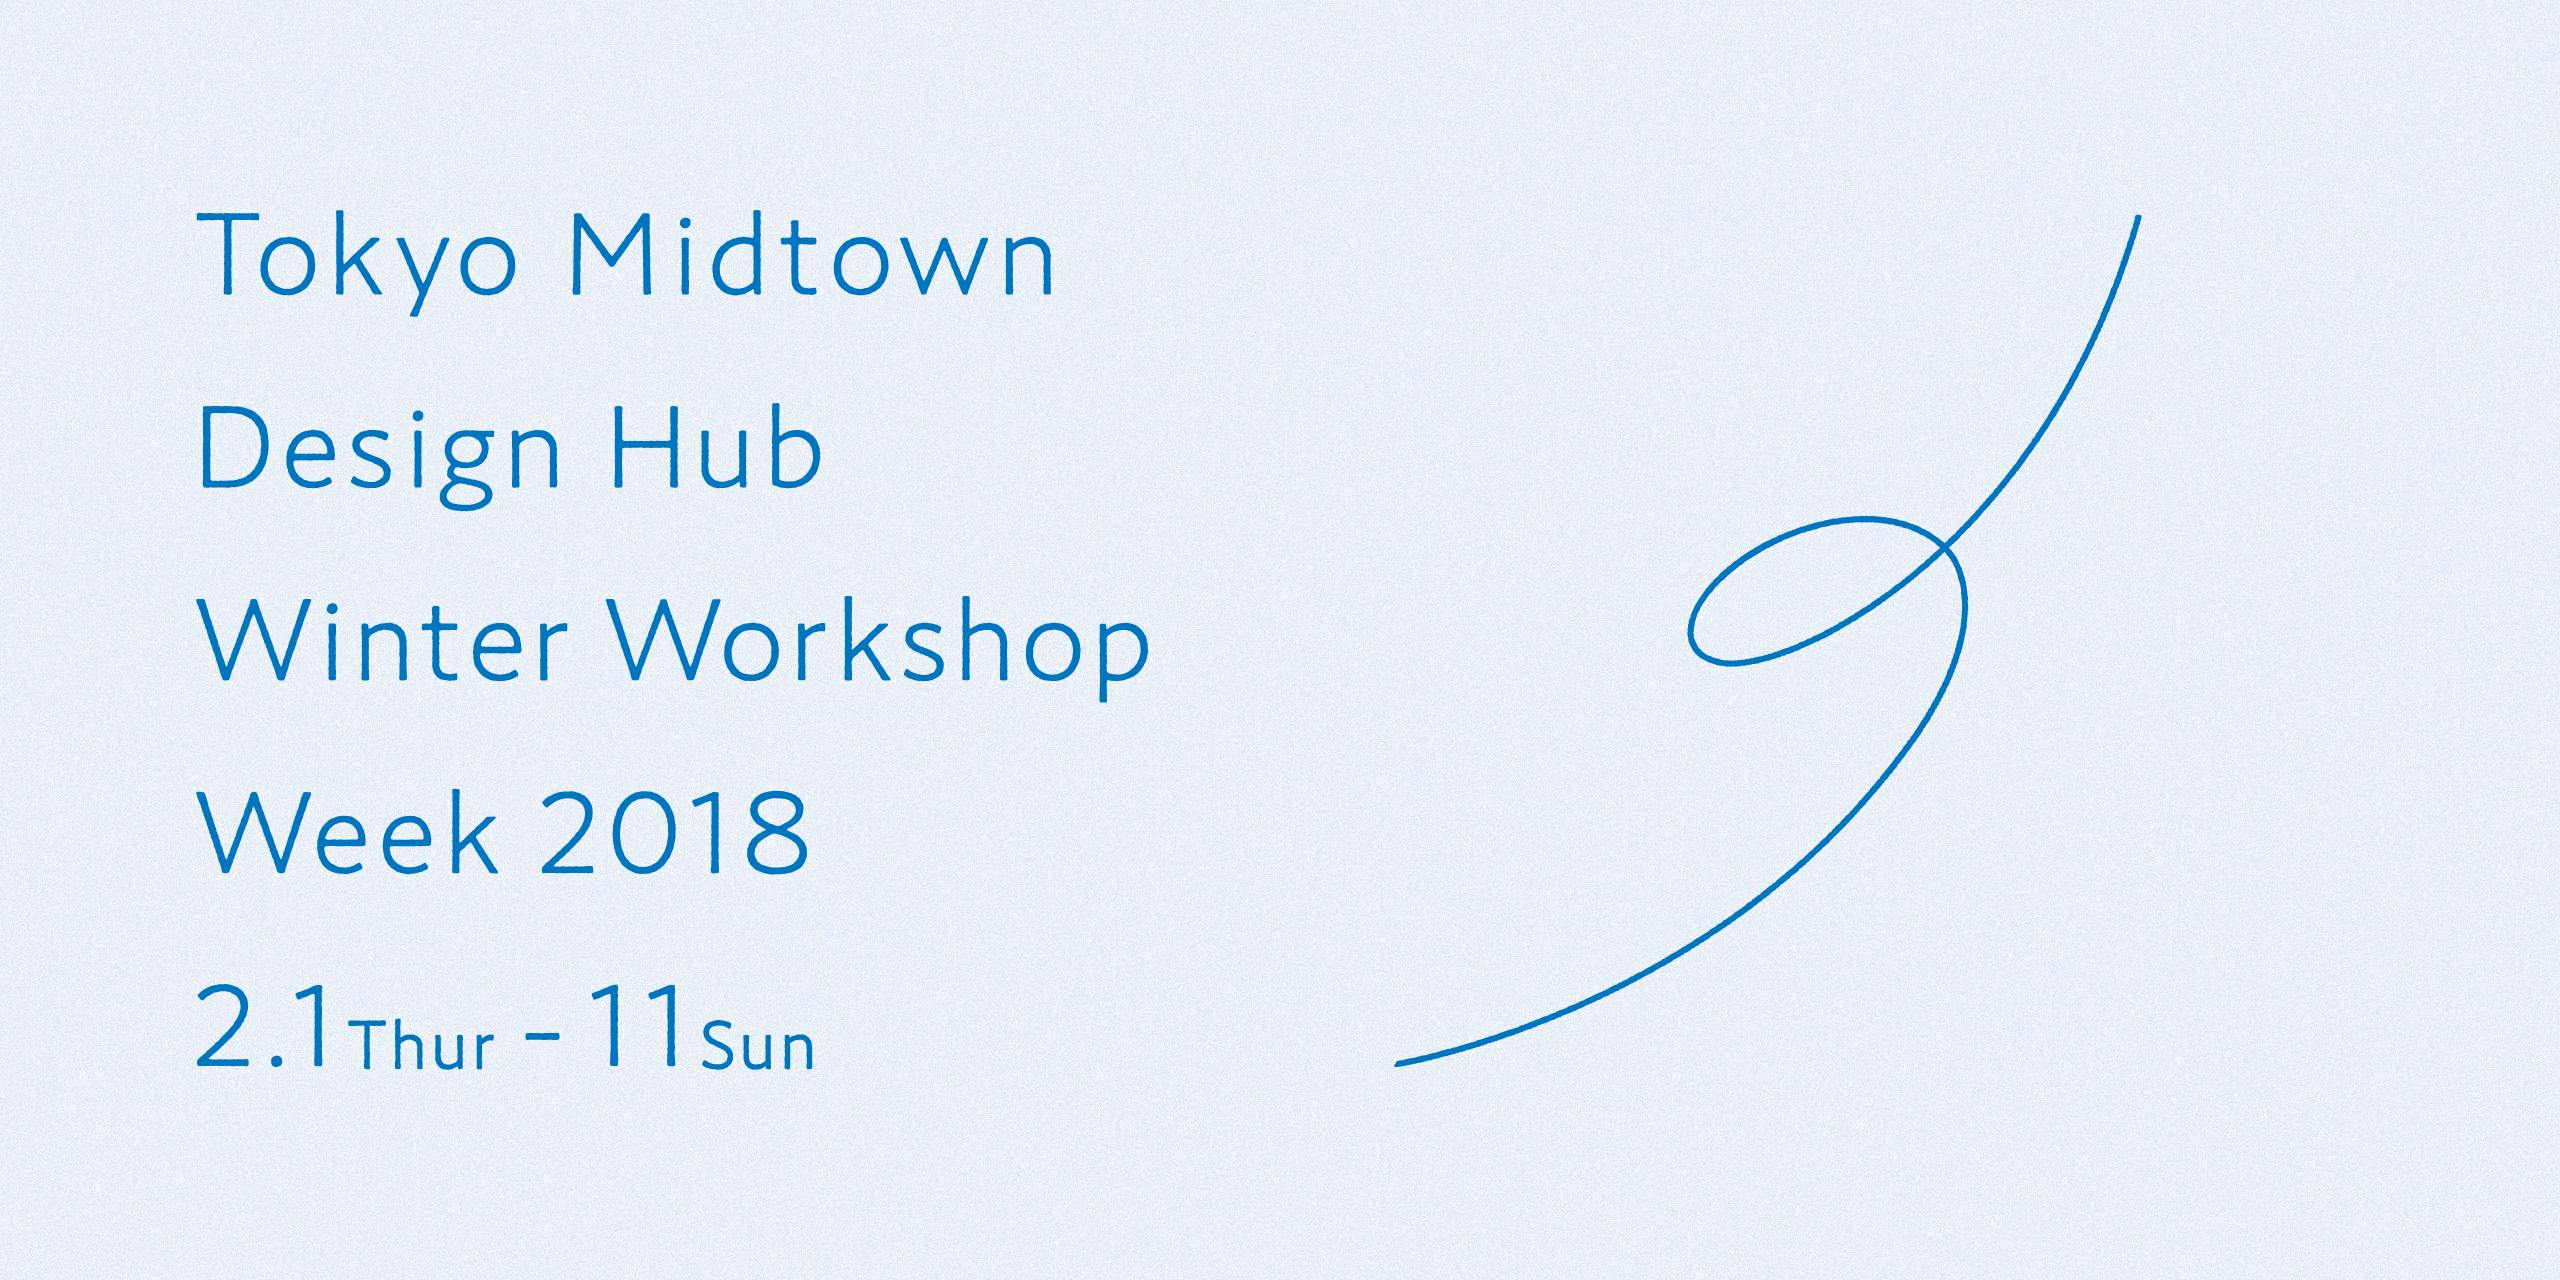 Tokyo Midtown Design Hub Winter Workshop Week 2018